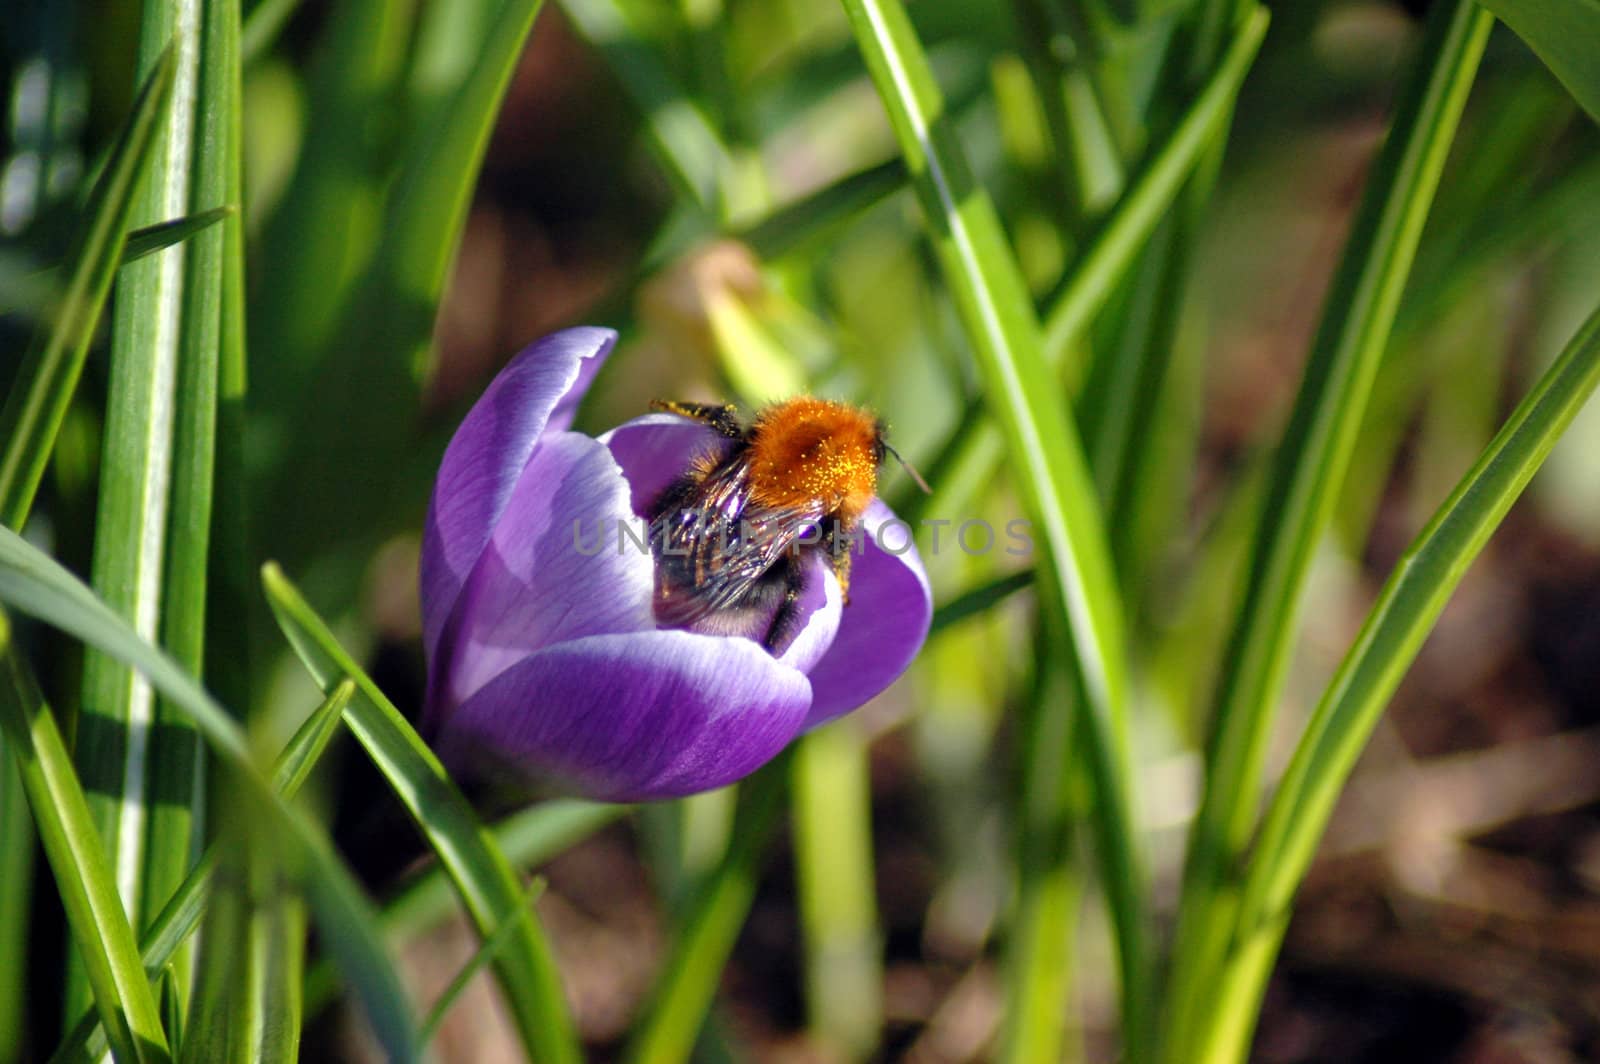 Bumblebee in Crocus.
Norway.